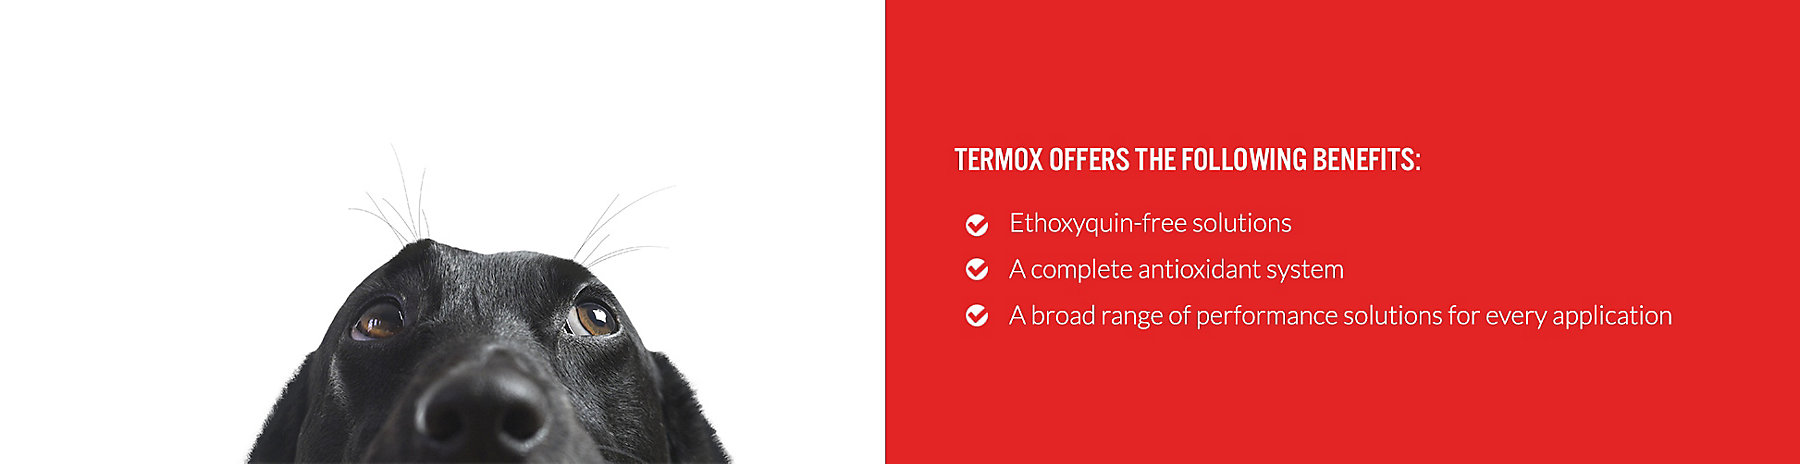 termox-benefits_1